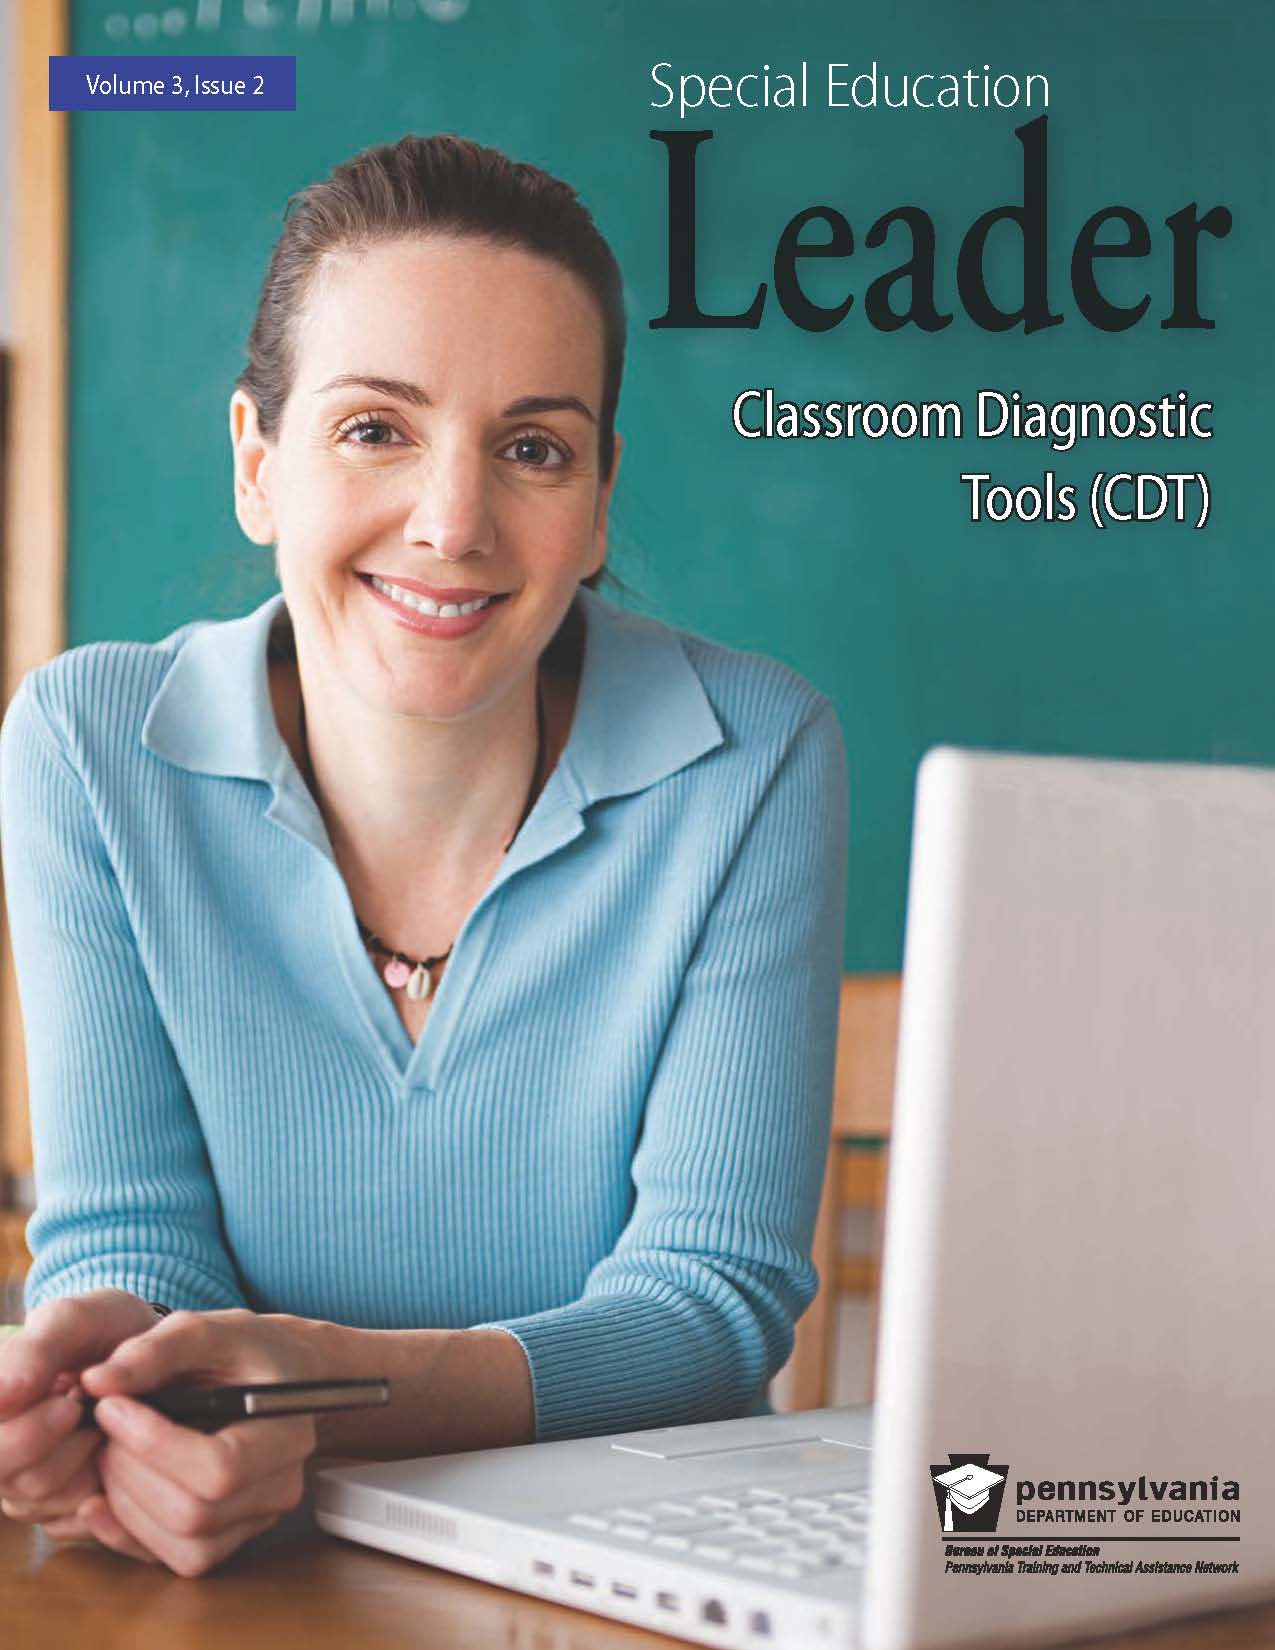 Education Leader - Classroom Diagnostic Tools (CDT)